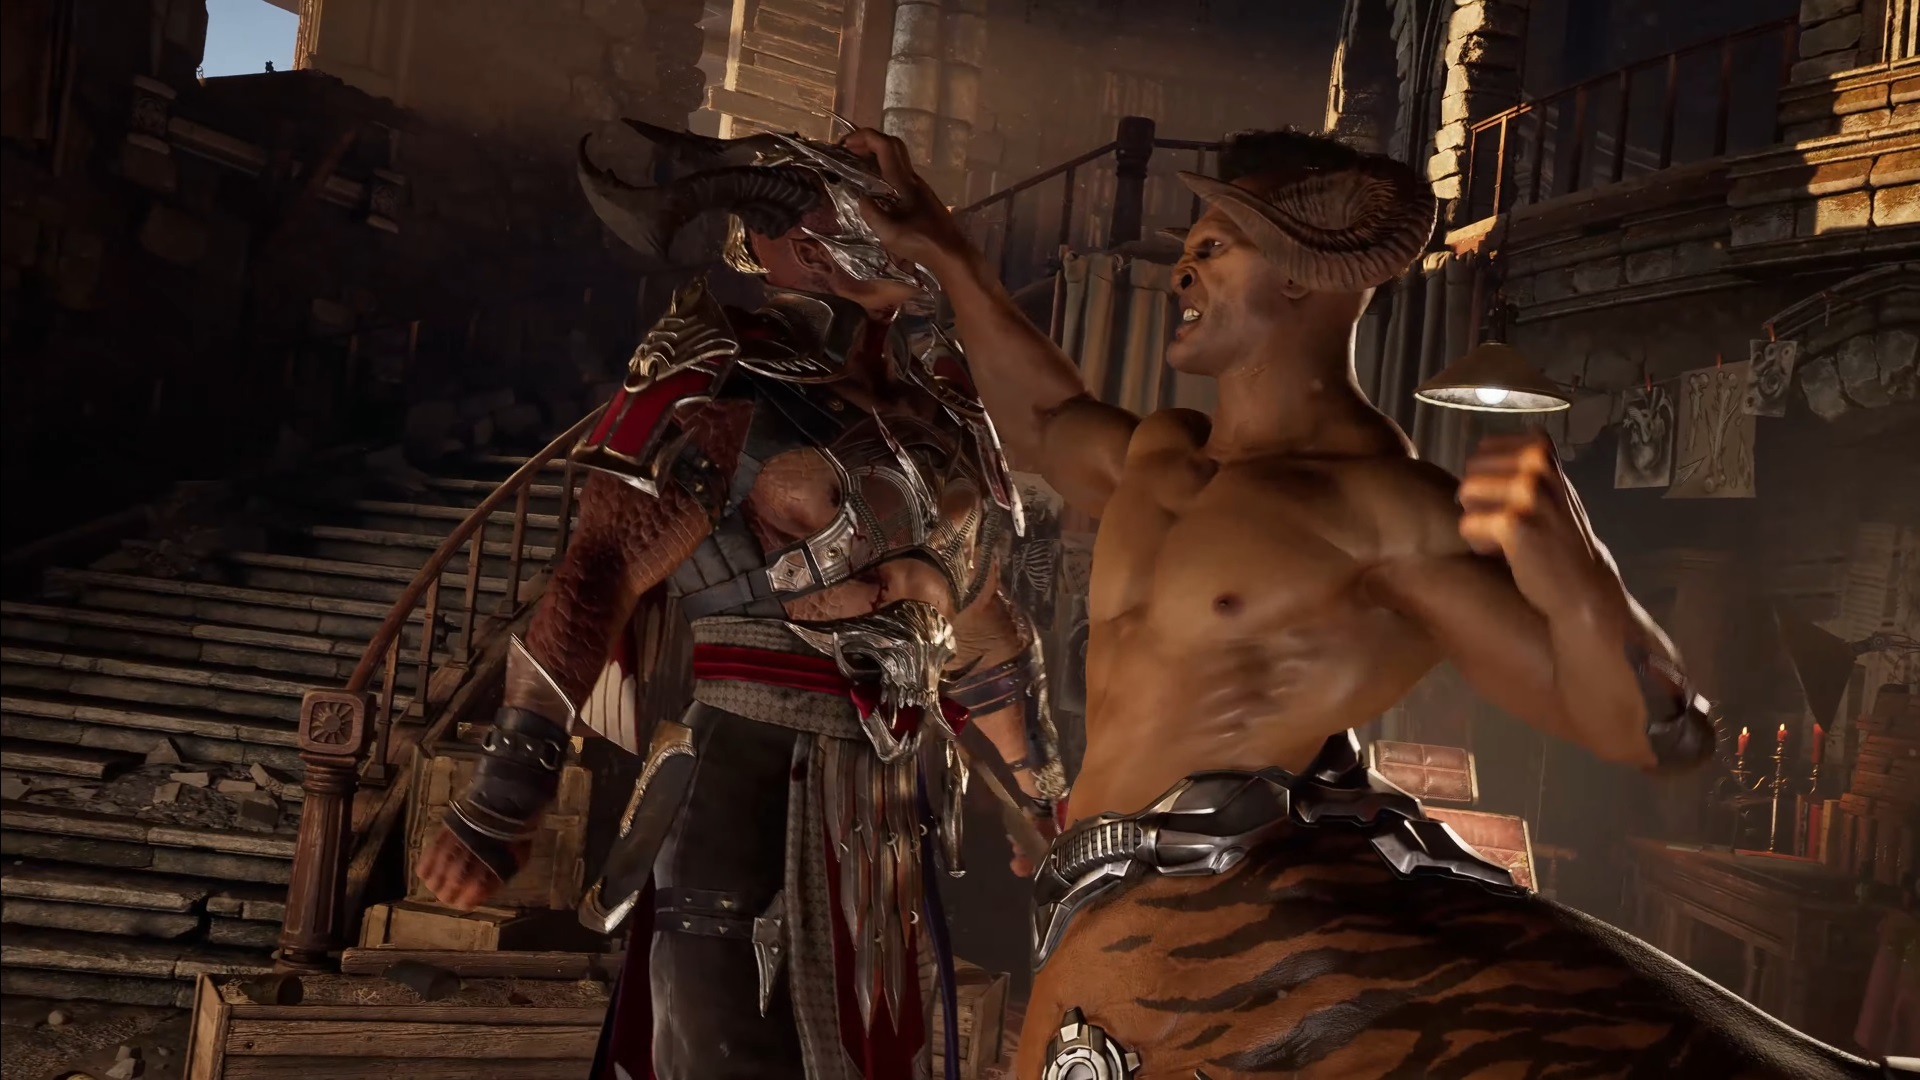 Captura de pantalla promocional de Mortal Kombat 1